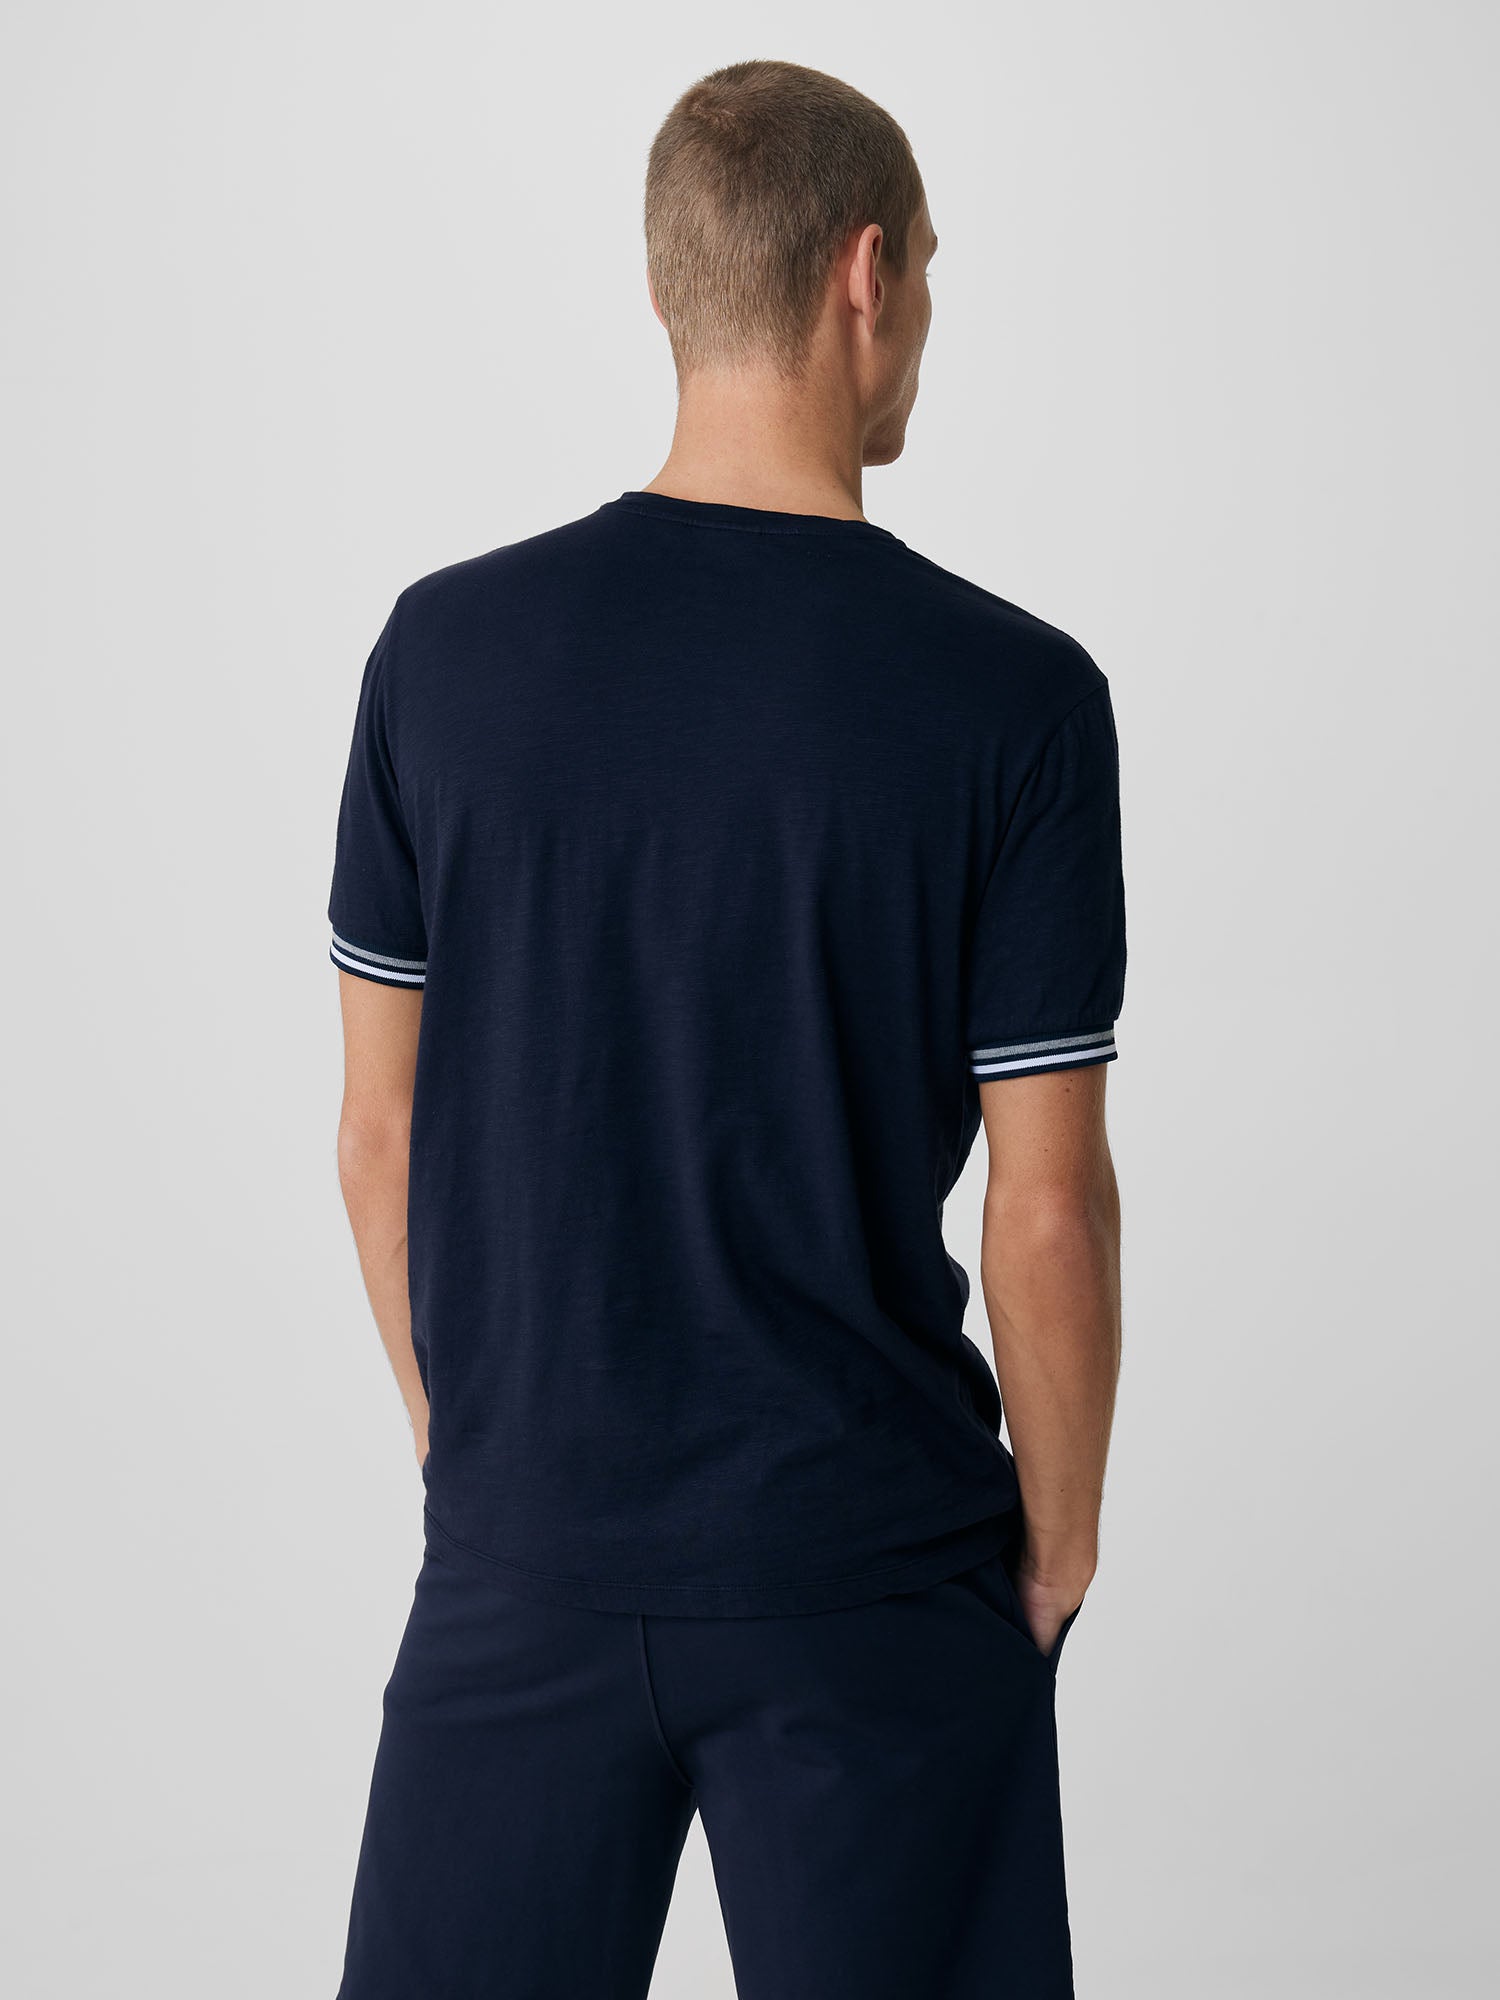 Genti T-shirt - Marine blauw